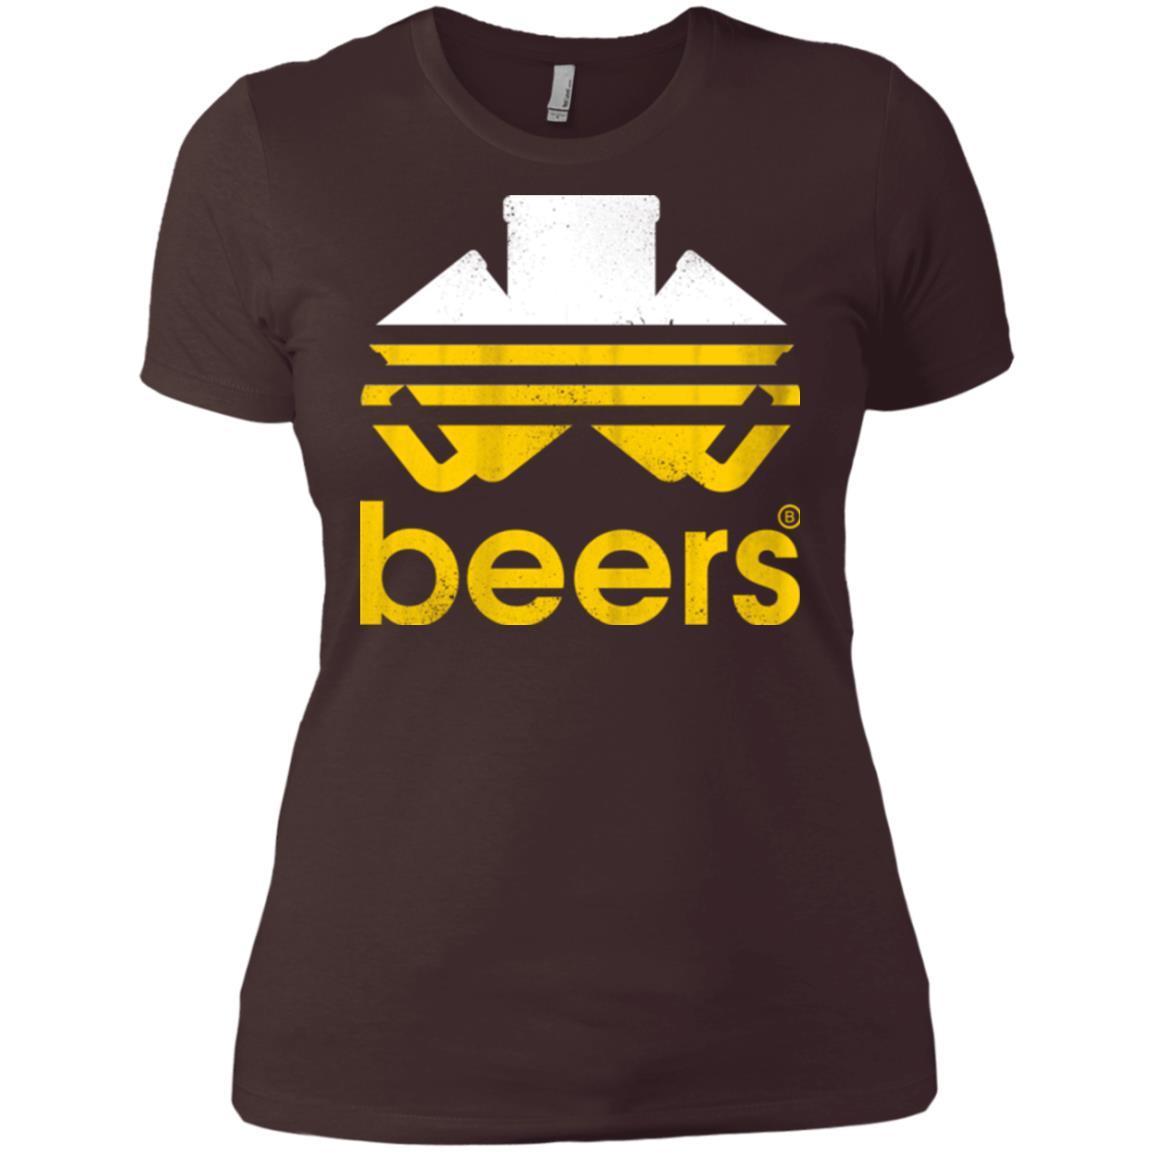 T-Shirts Dark Chocolate / X-Small Beers Women's Premium T-Shirt